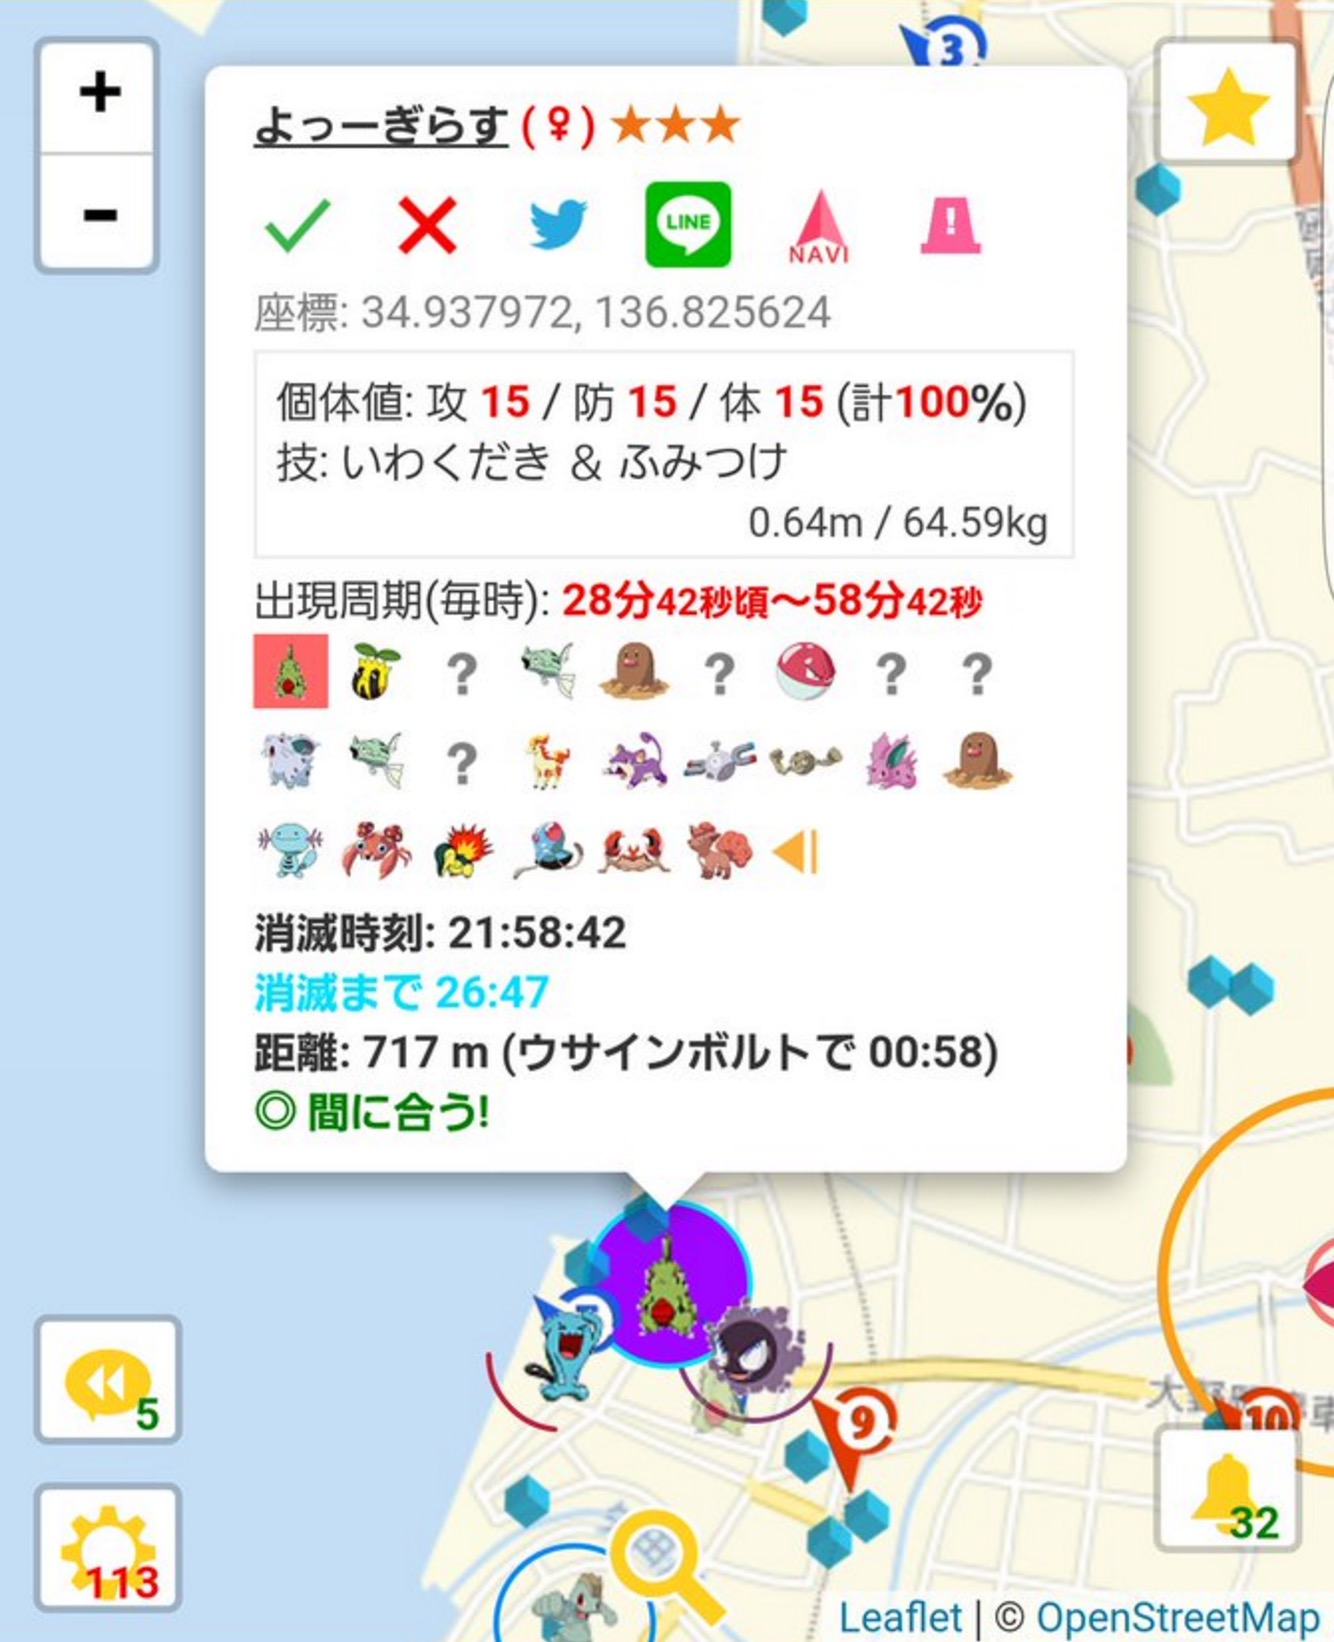 ポケモンgo 世界初のヨーギラス100 湧きを日本で確認 何調べのデータなんだよｗｗｗｗ ポケモンgo攻略まとめ速報